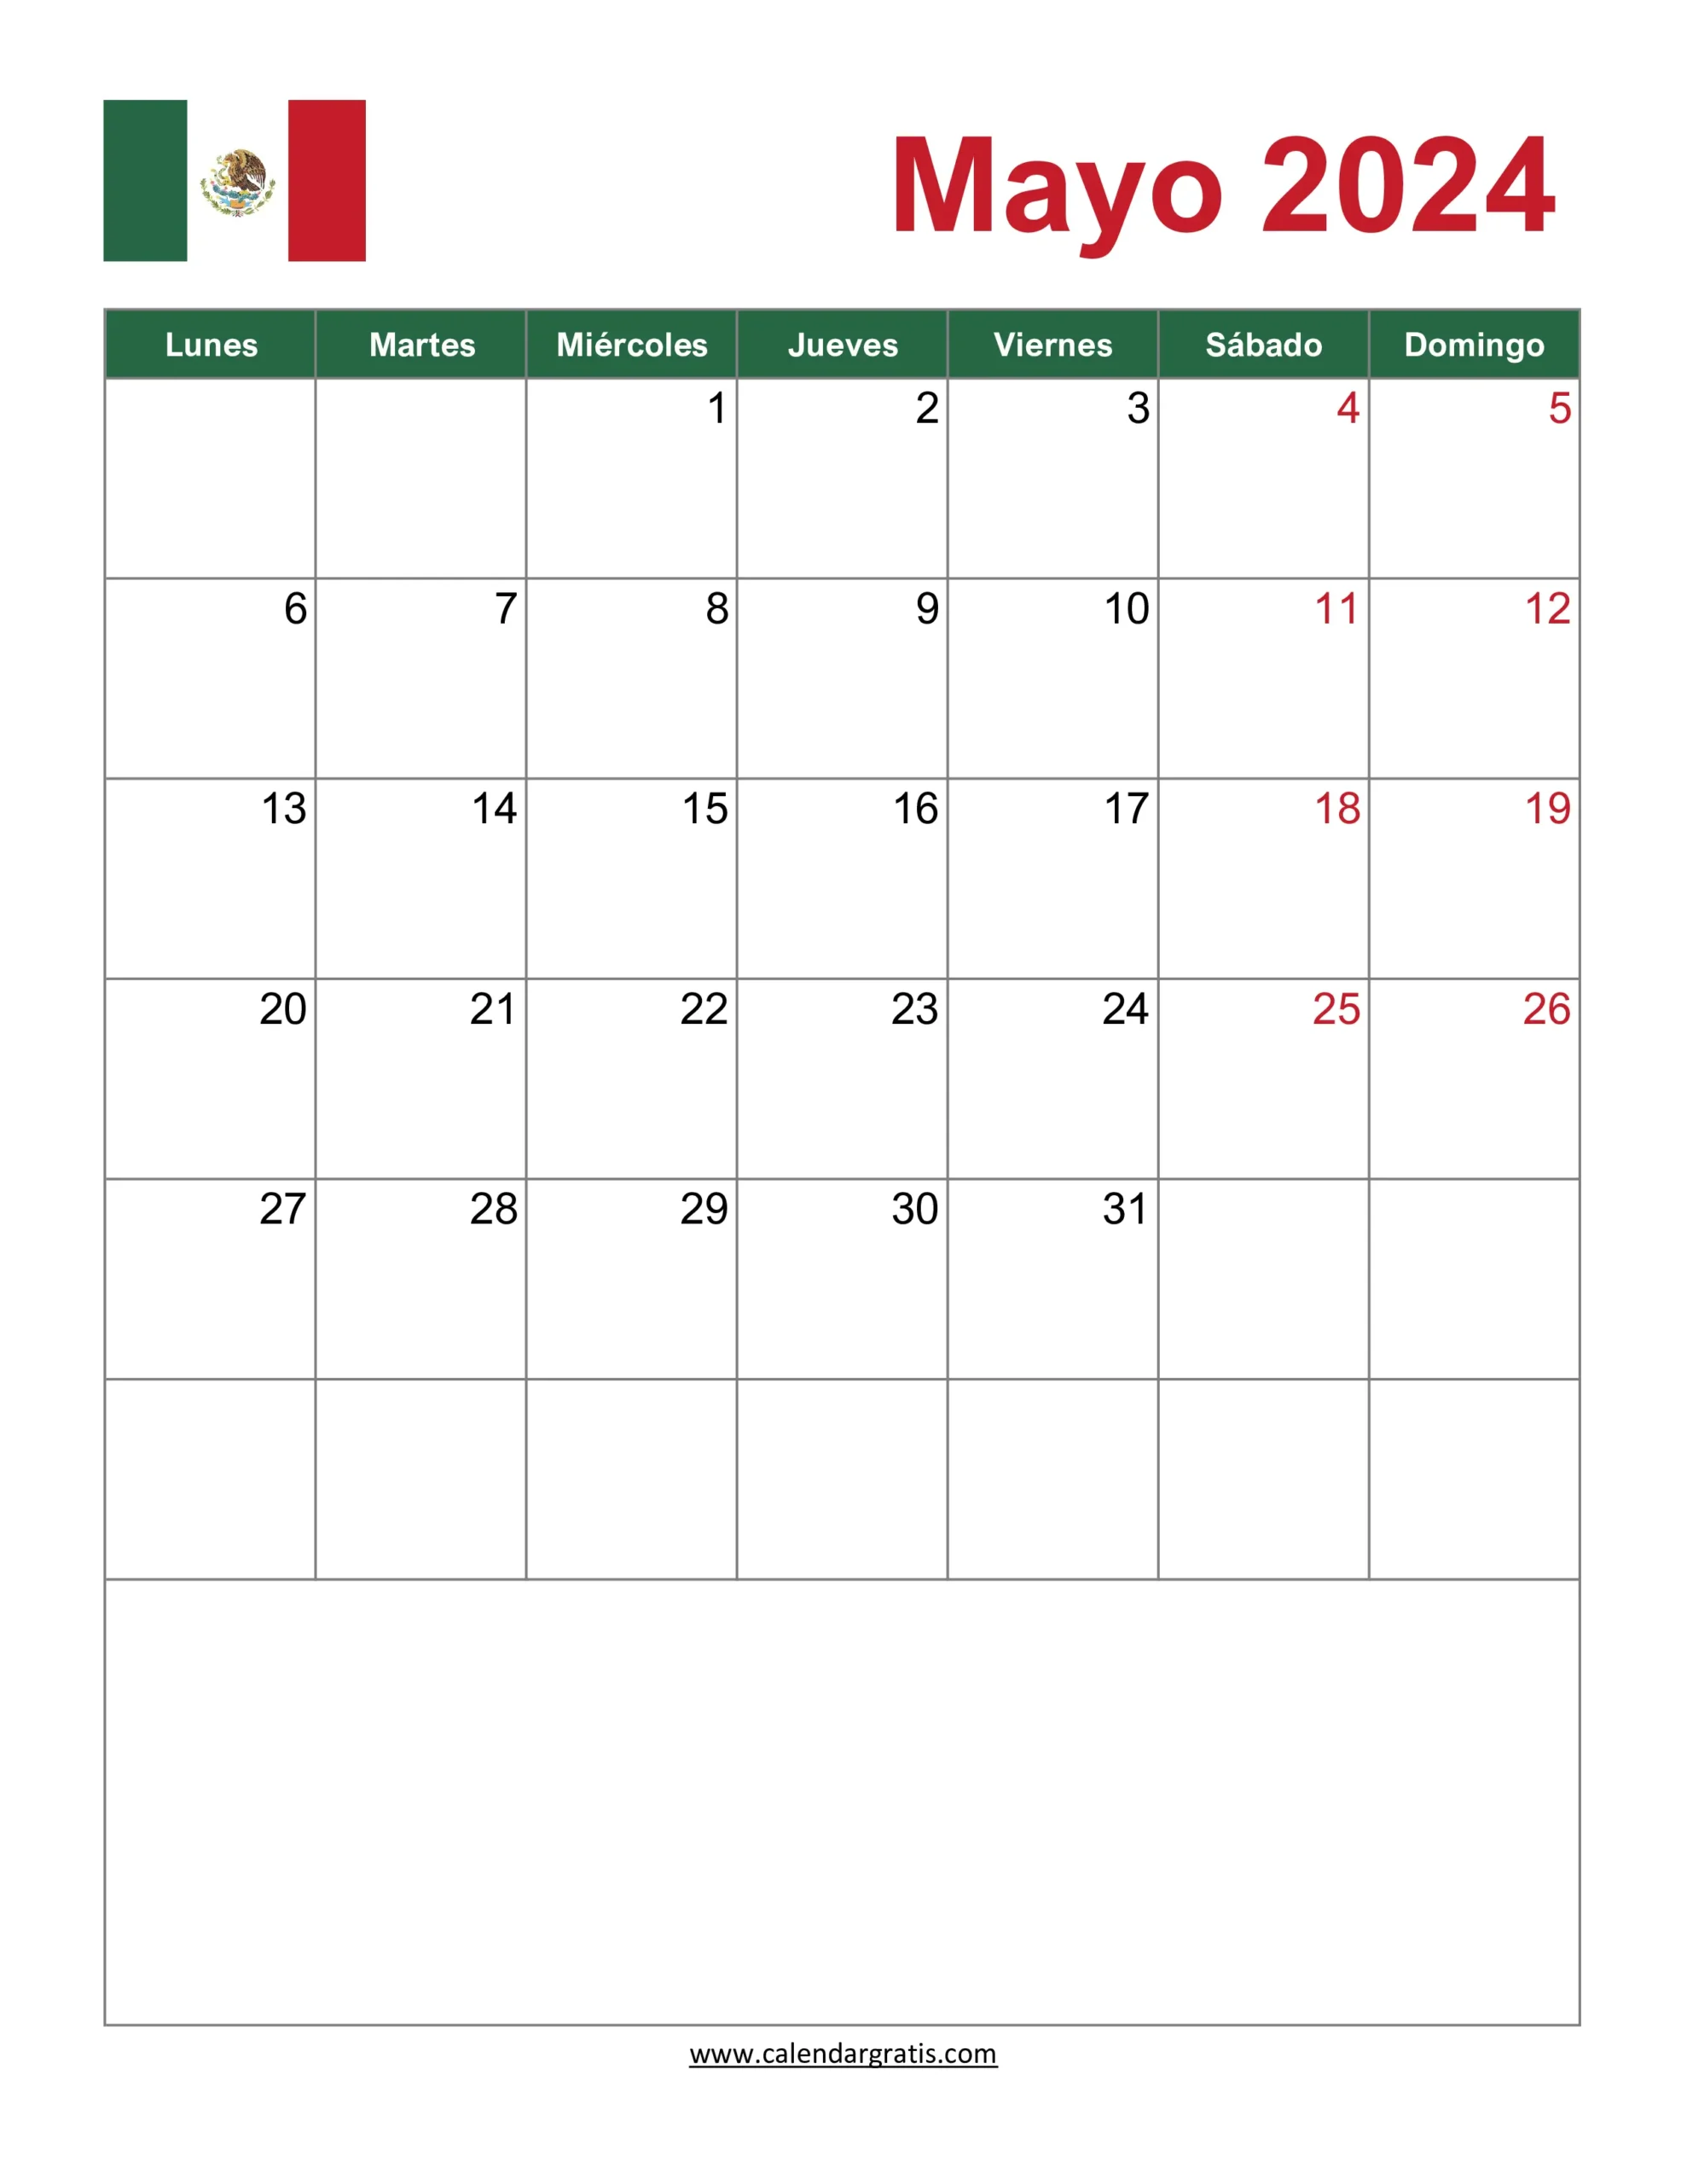 Un calendario para mayo de 2024 en español, con días de la semana de lunes a domingo y fechas dispuestas en filas con la bandera mexicana.